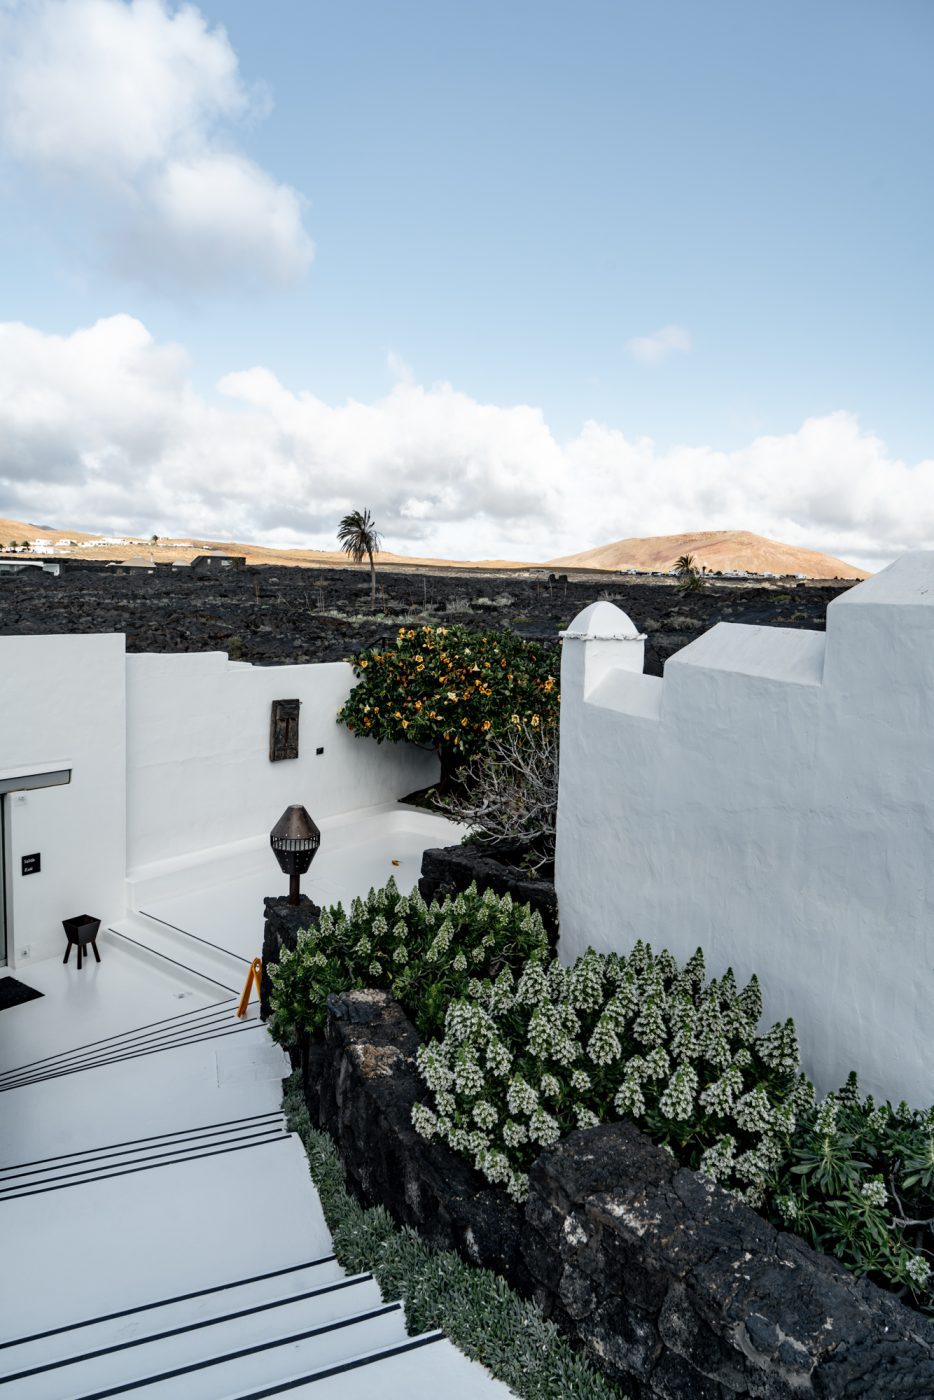 Fundacion Cesar Manrique, one of the top Cesar Manrique attractions in Lanzarote